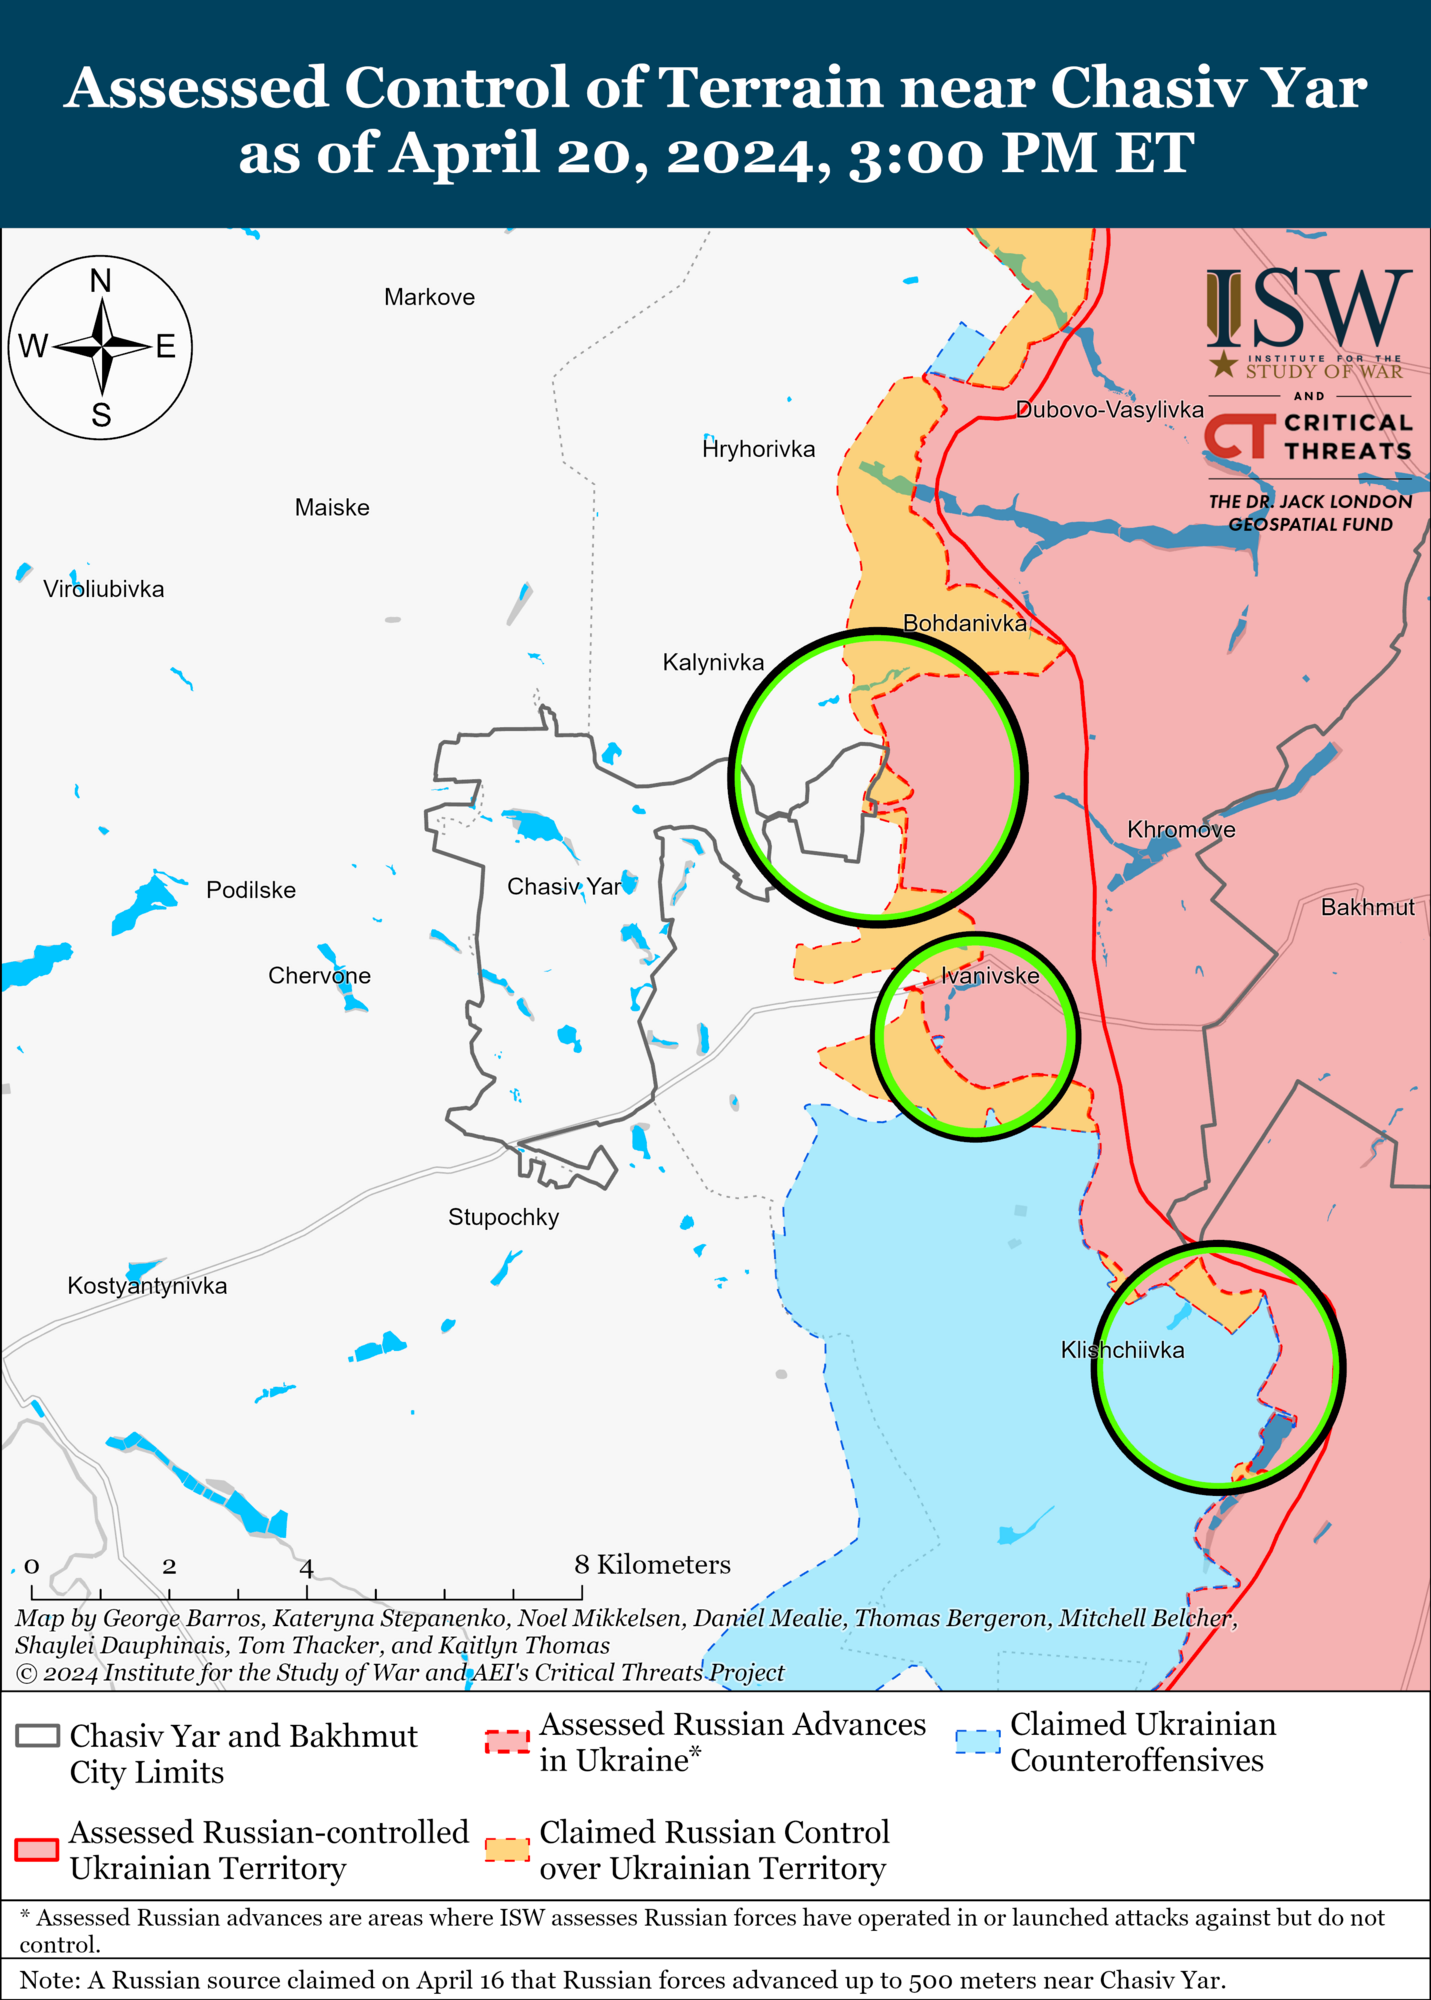 Siły Zbrojne Ukrainy będą w znacznie lepszej sytuacji: ISW przewiduje działania Rosji do czasu otrzymania przez Ukrainę pomocy wojskowej USA